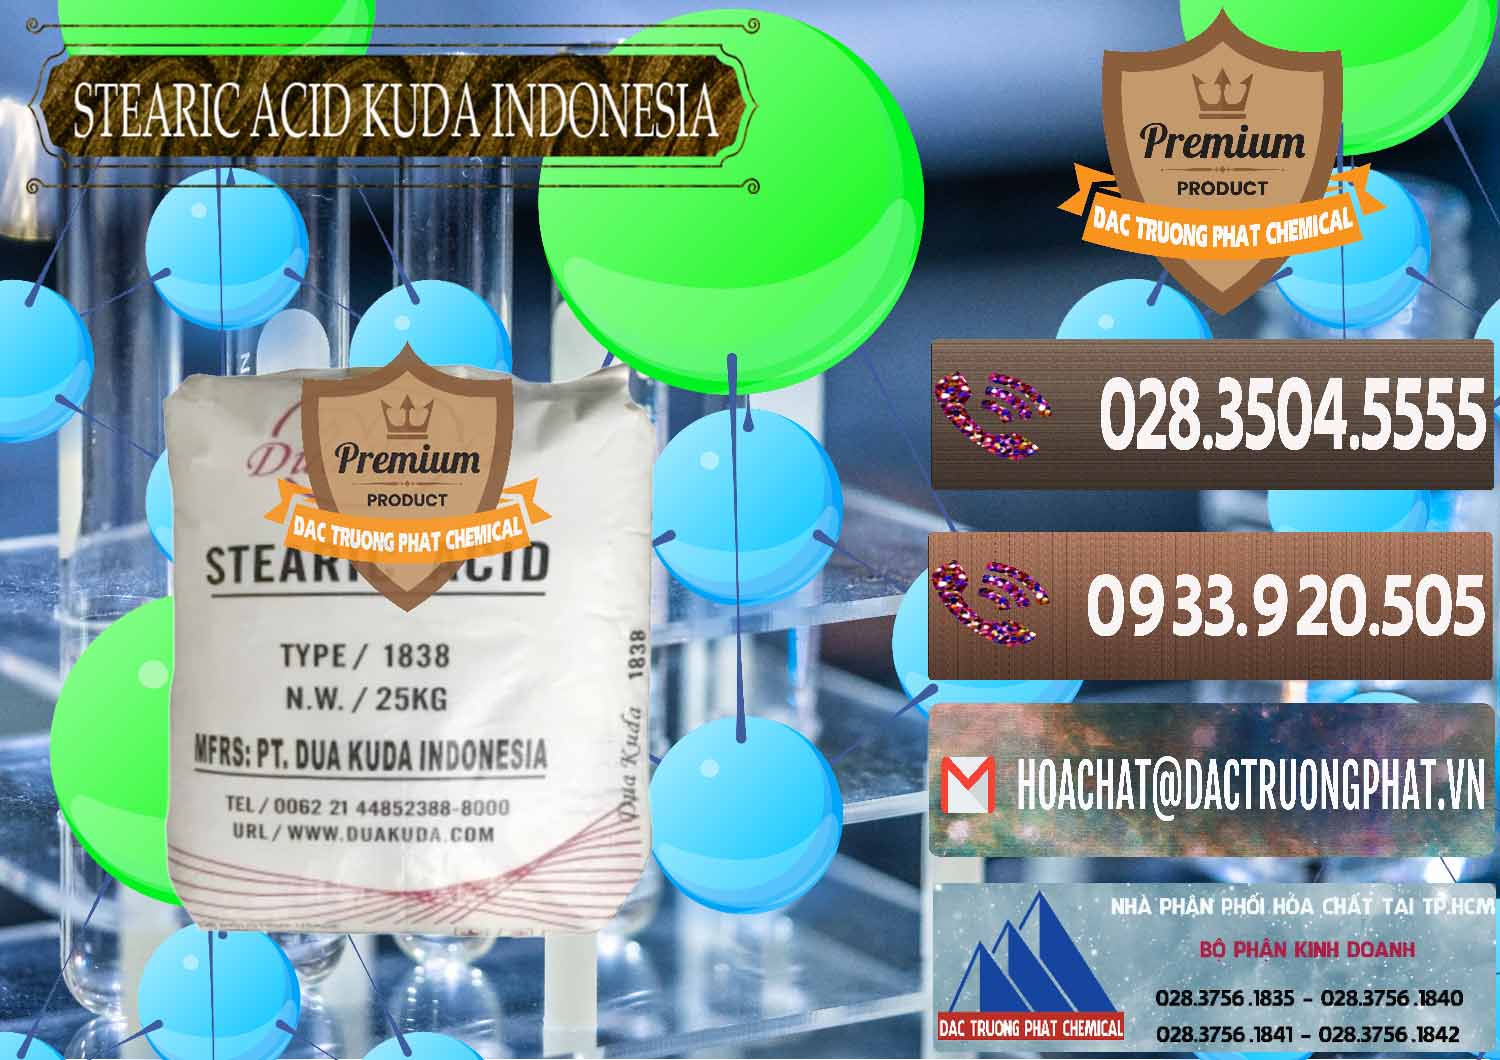 Cty chuyên bán ( cung ứng ) Axit Stearic - Stearic Acid Dua Kuda Indonesia - 0388 - Đơn vị phân phối và bán hóa chất tại TP.HCM - hoachatviet.net